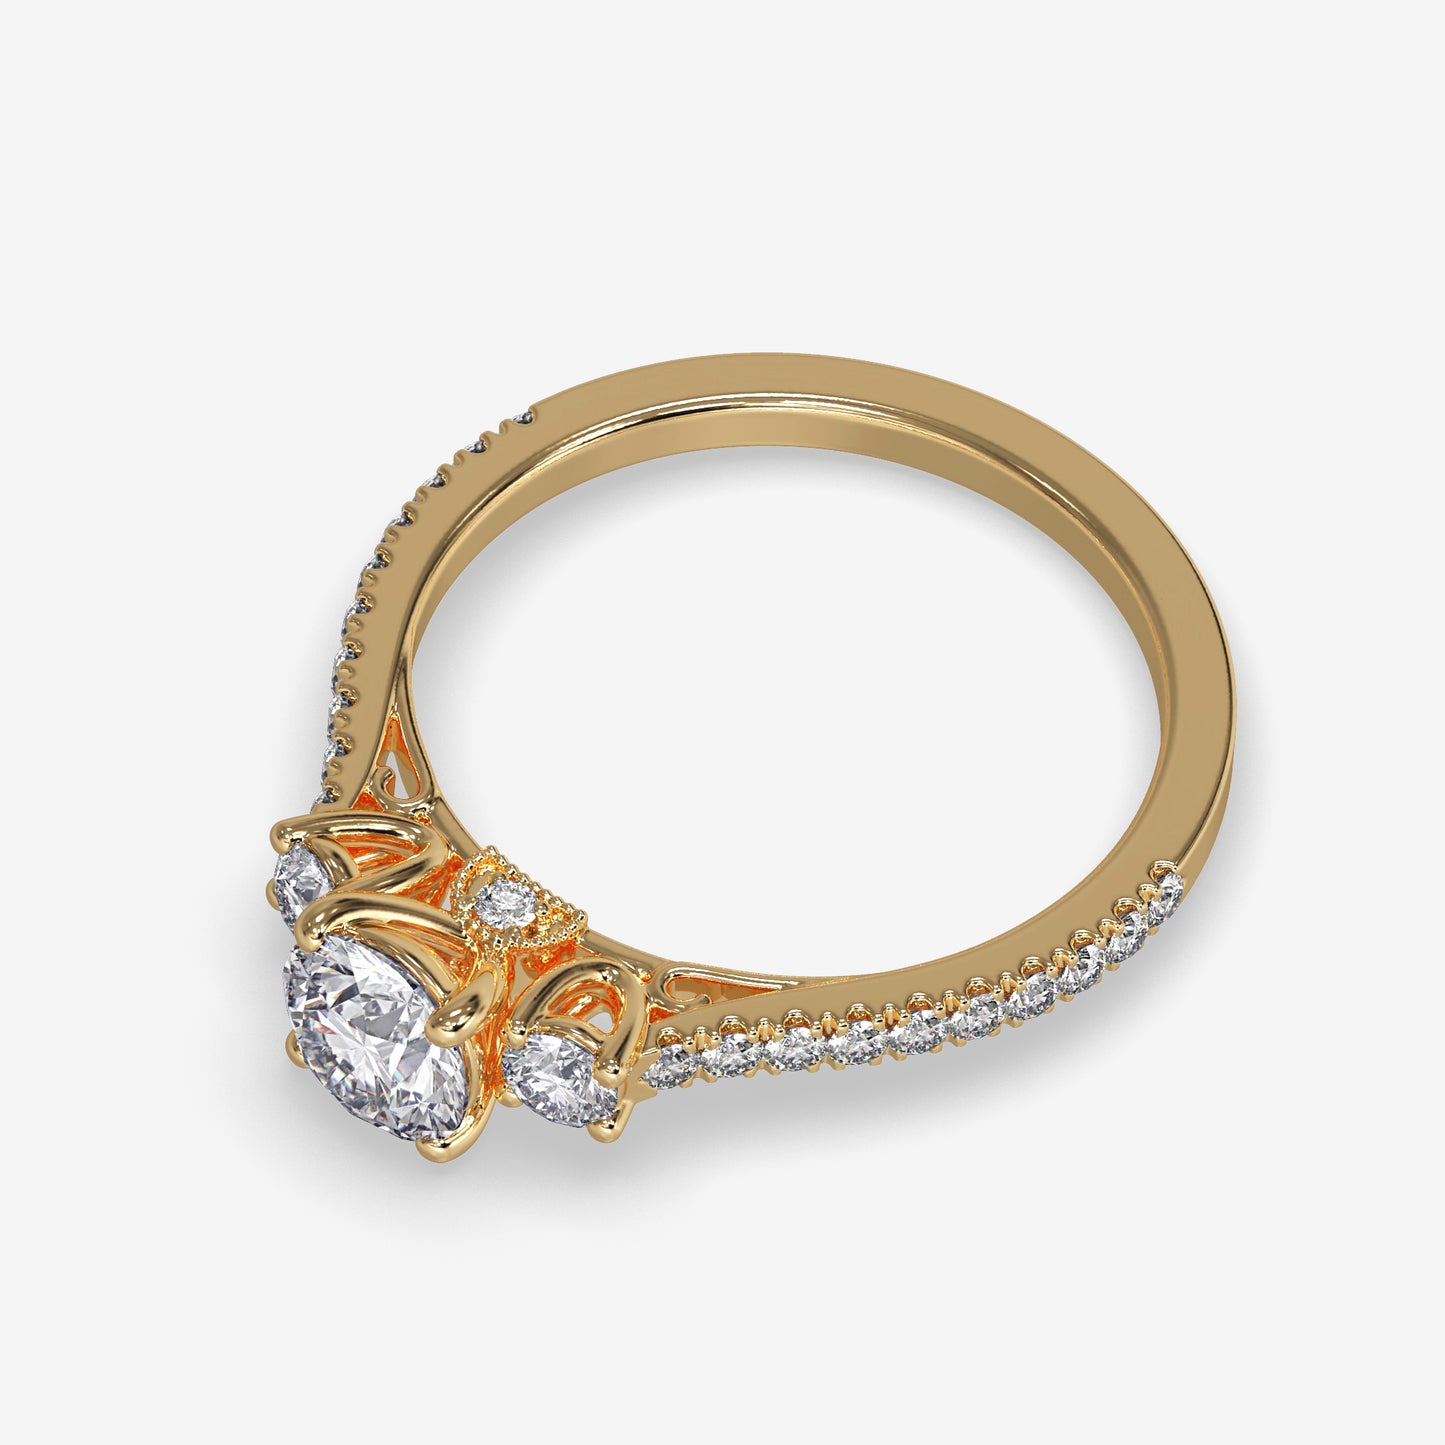 Scarlett Vintage Inspired Three- Stone Round Engagement Ring - ALLMYERA